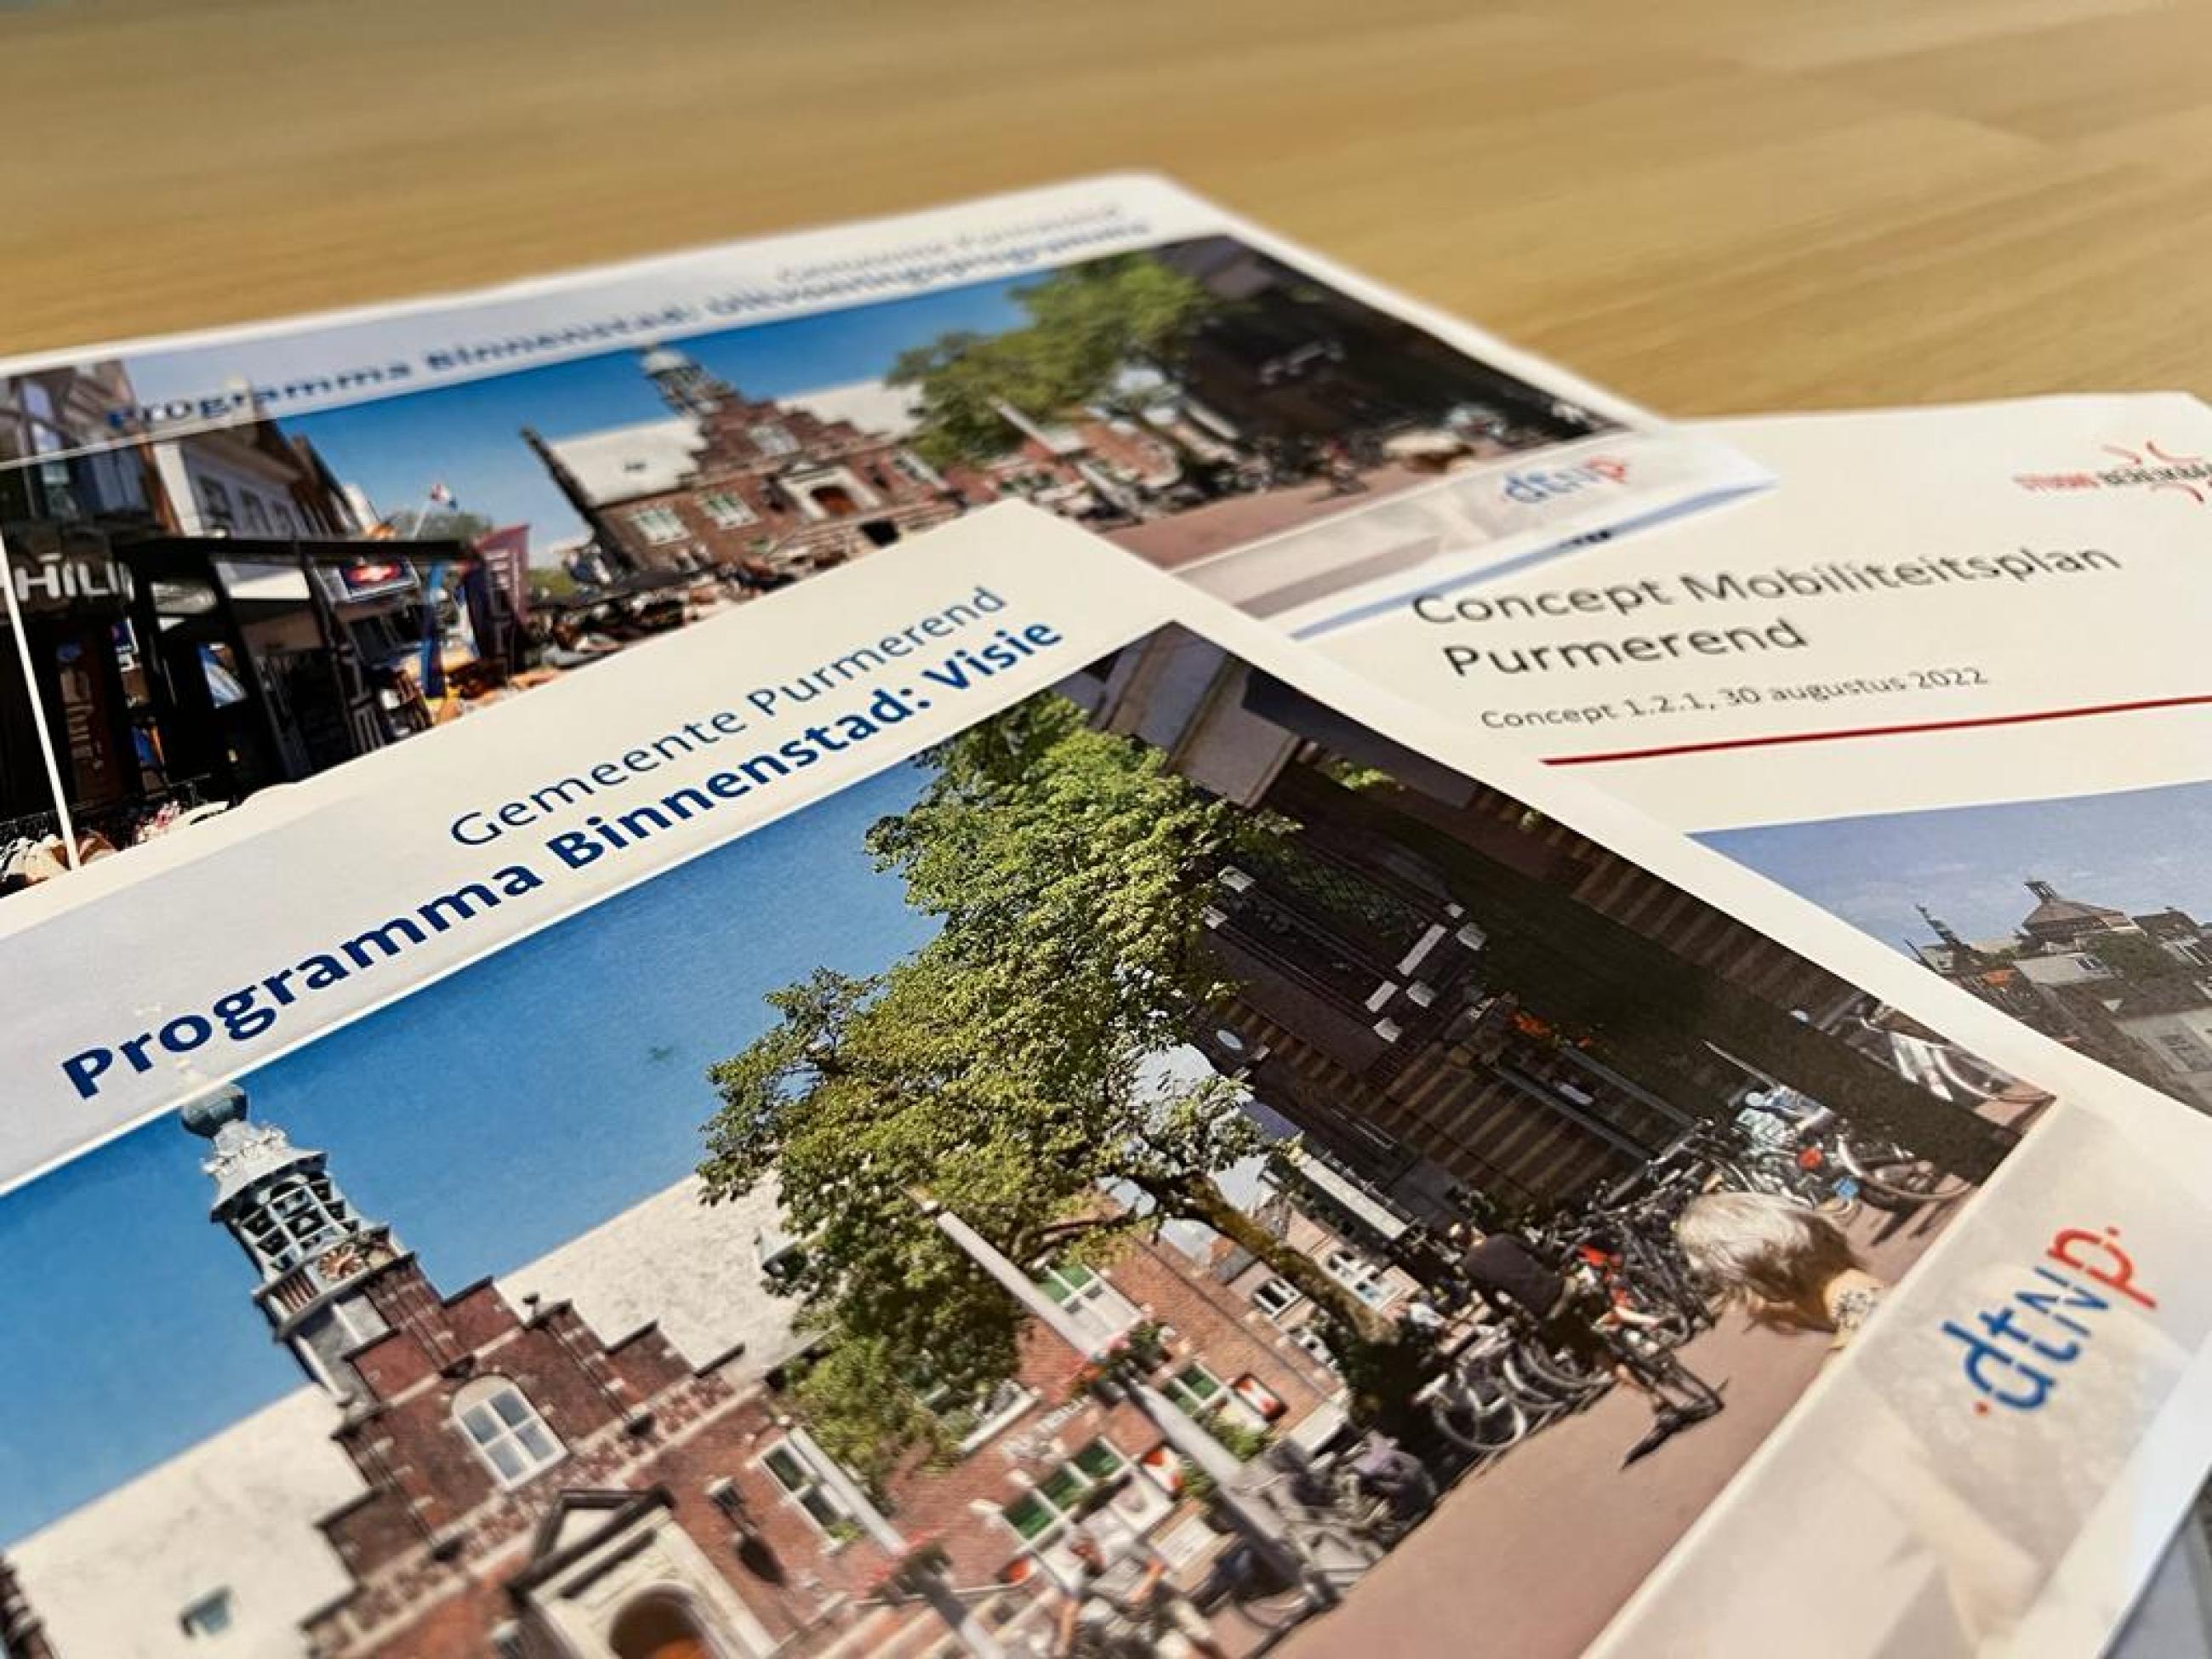 Afbeelding van de voorpagina van de volgende 3 documenten: conceptvisie programma Binnenstad, uitvoeringsprogramma programma binnenstad en concept mobiliteitsplan. 